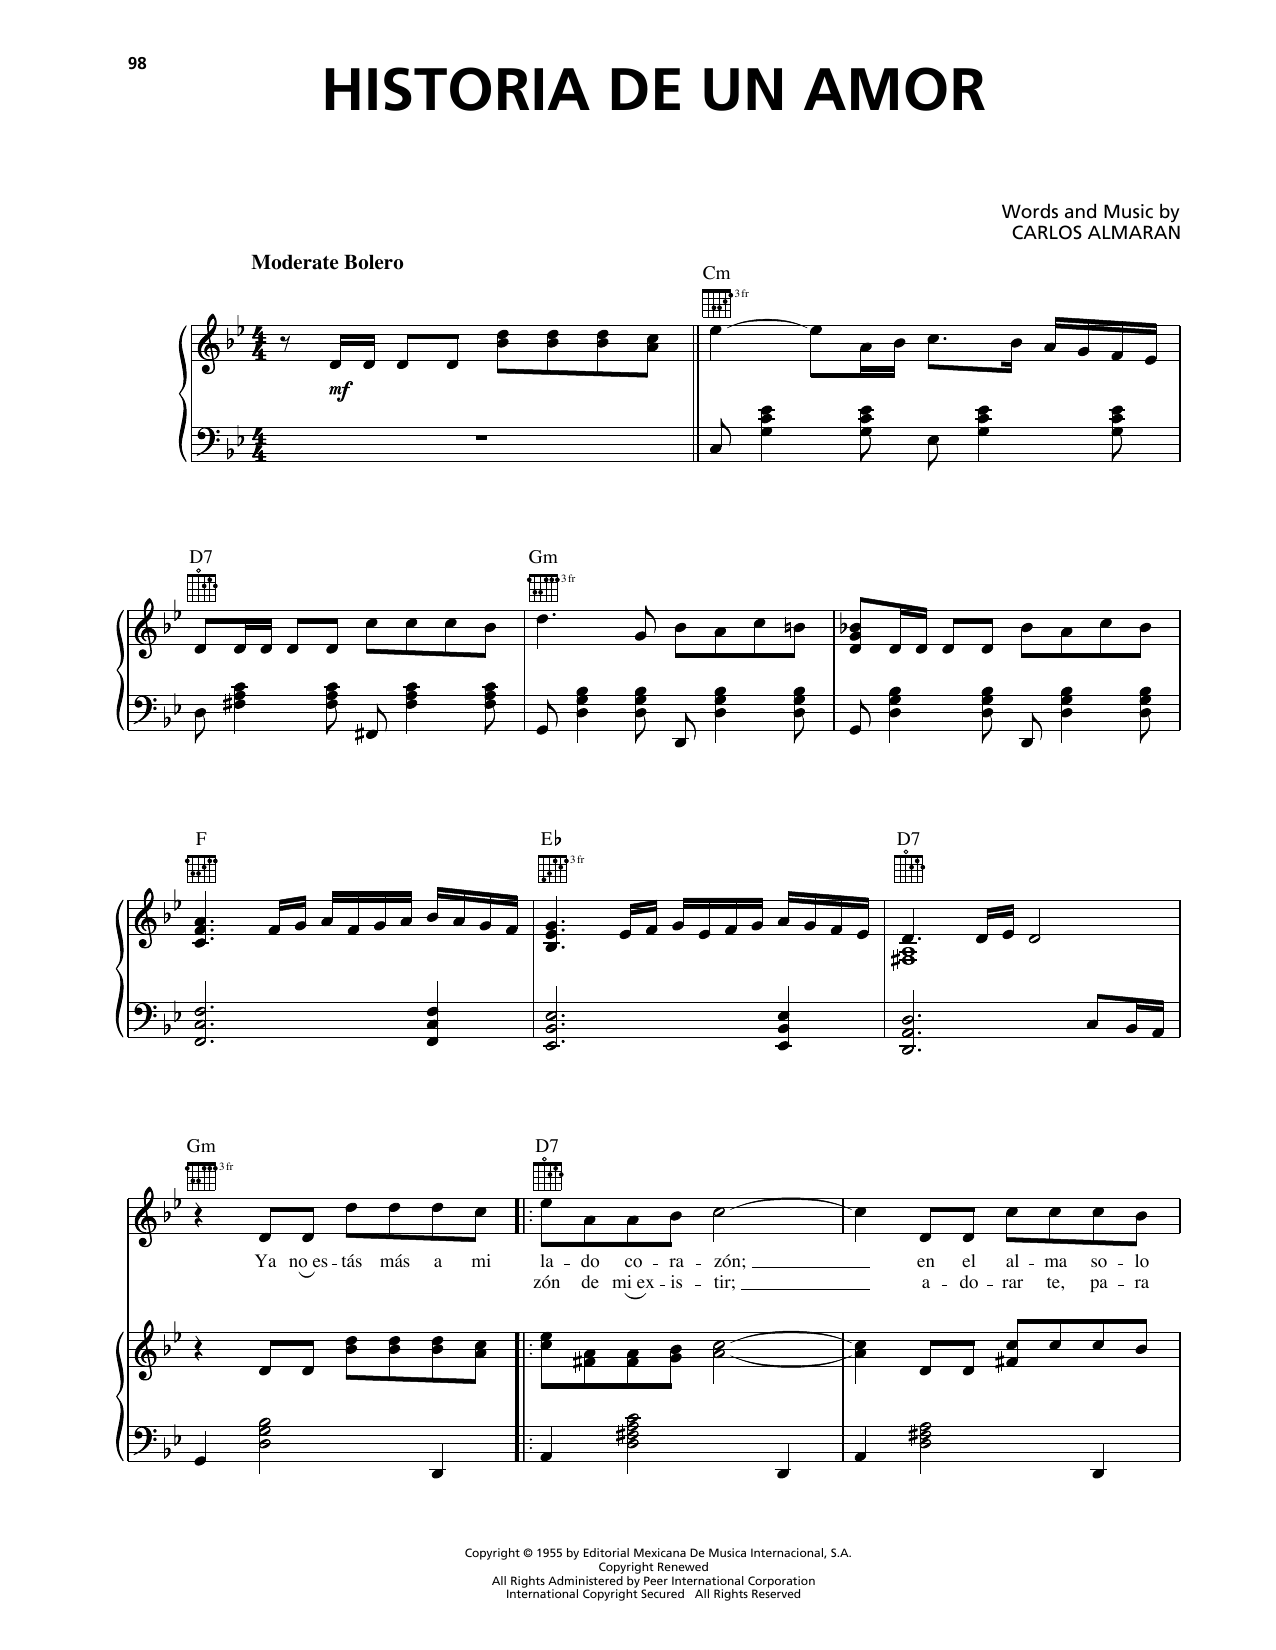 Luis Miguel Historia De Un Amor sheet music notes printable PDF score